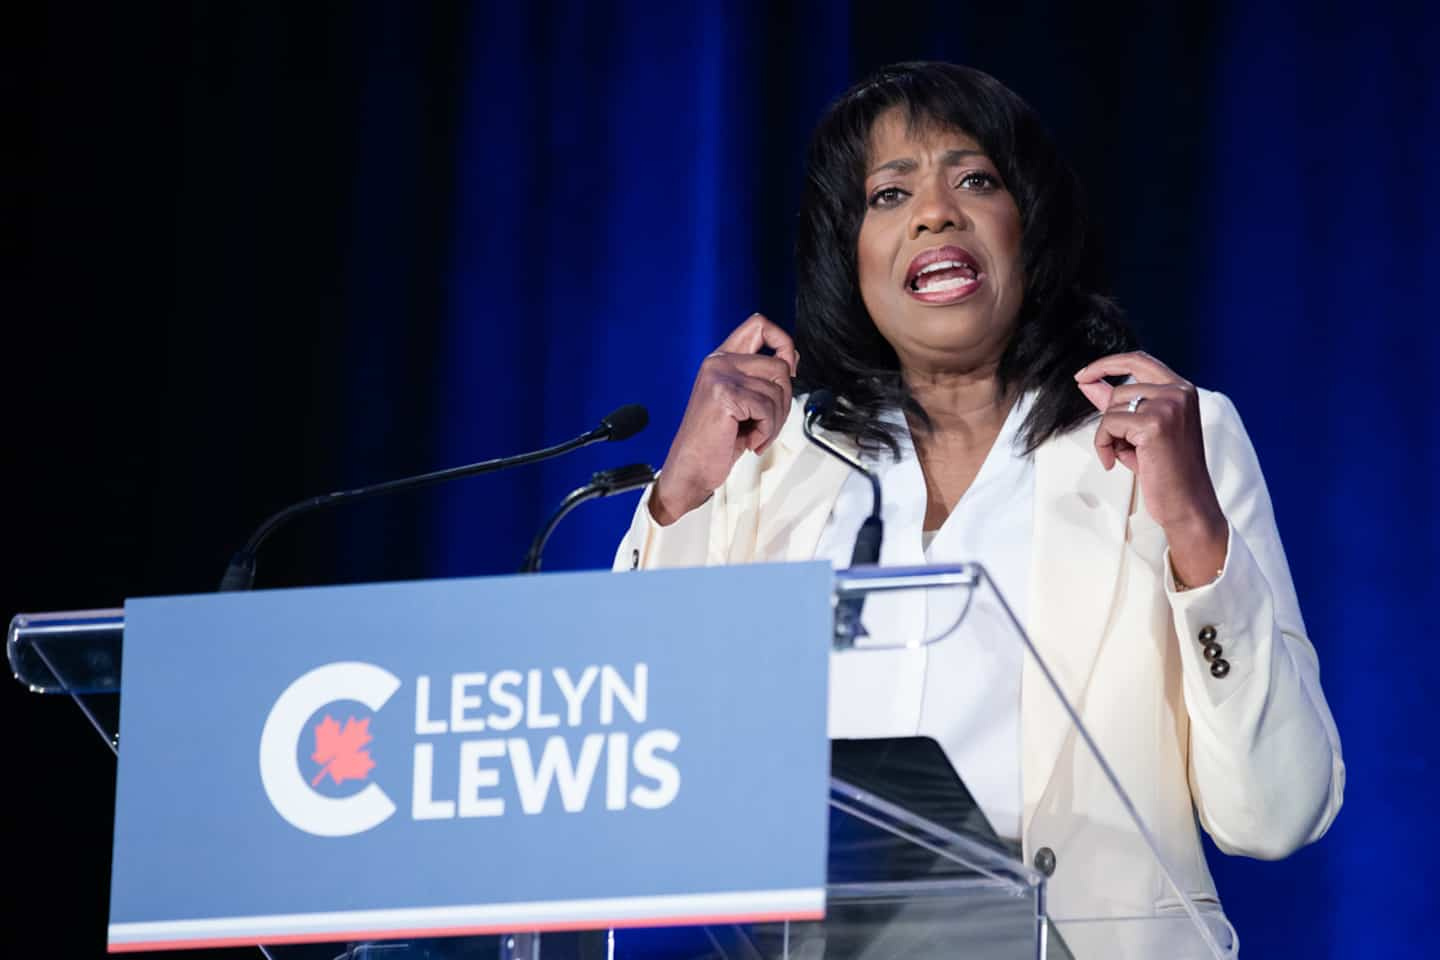 CPC leadership: candidate Leslyn Lewis also refuses to debate